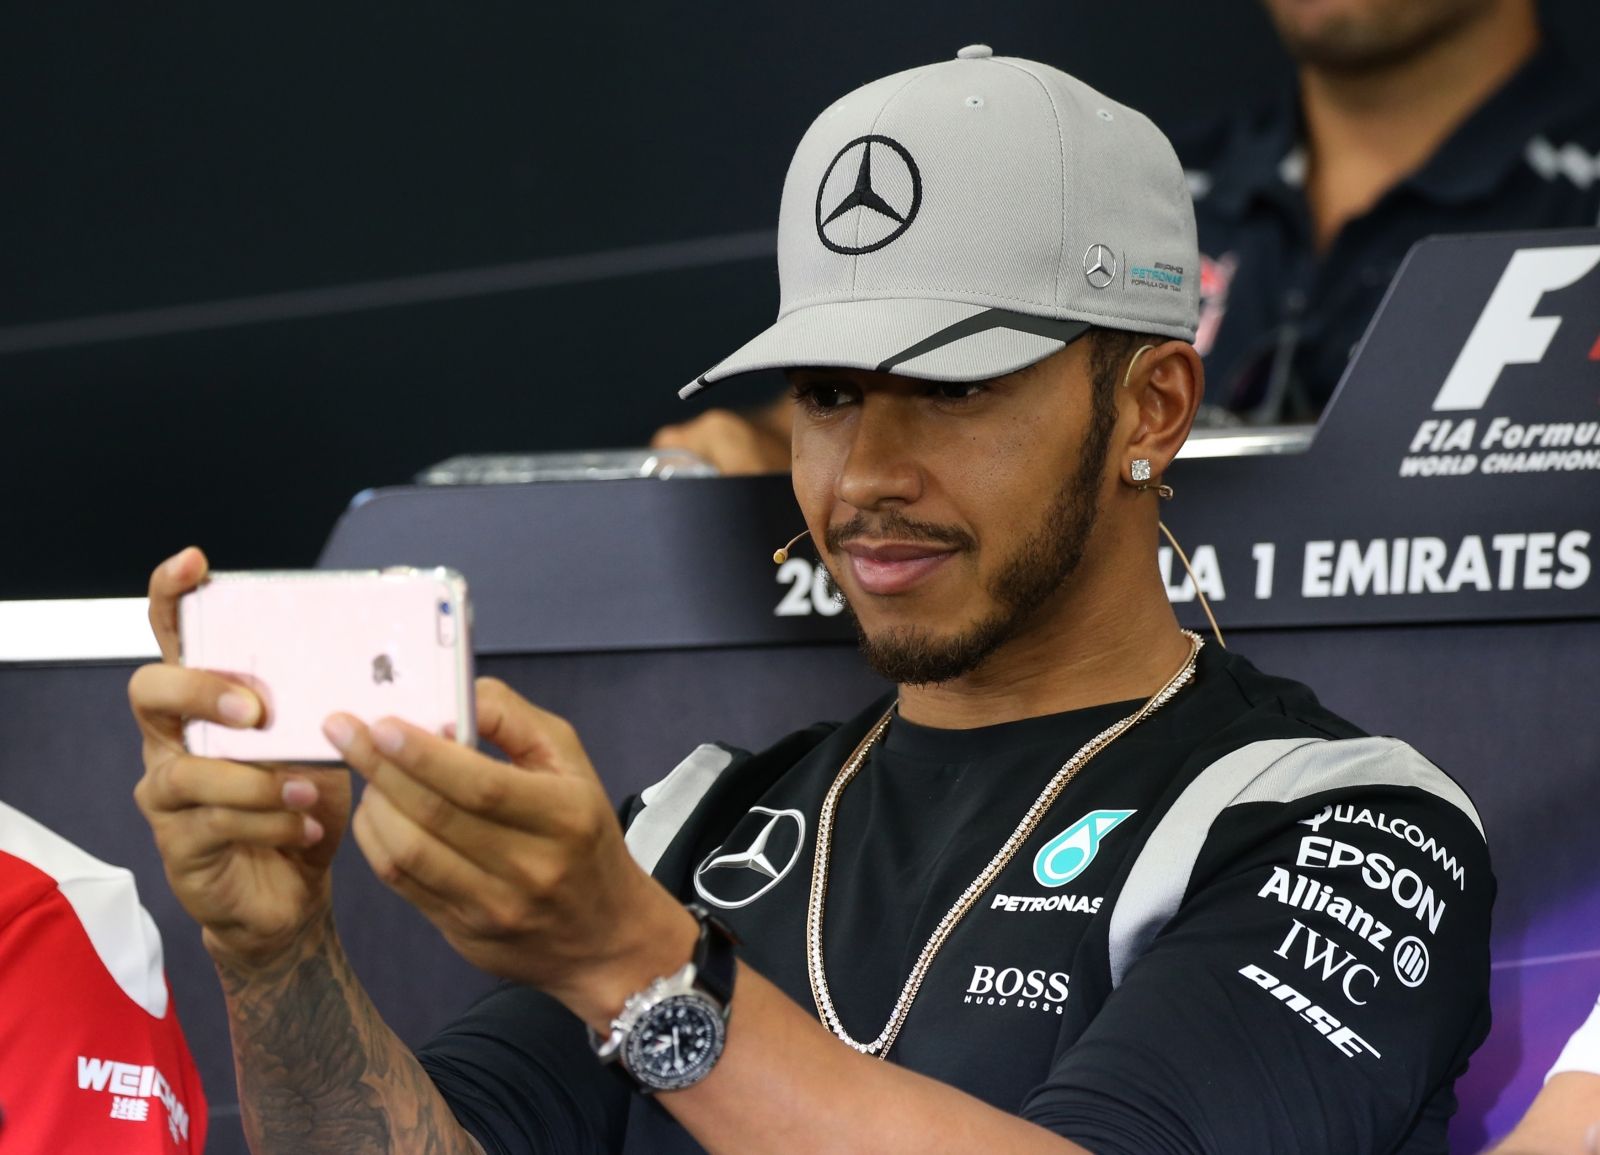 Lewis Hamilton nel corso della conferenza stampa del giovedì, a Suzuka (foto da: ibtimes.co.uk)